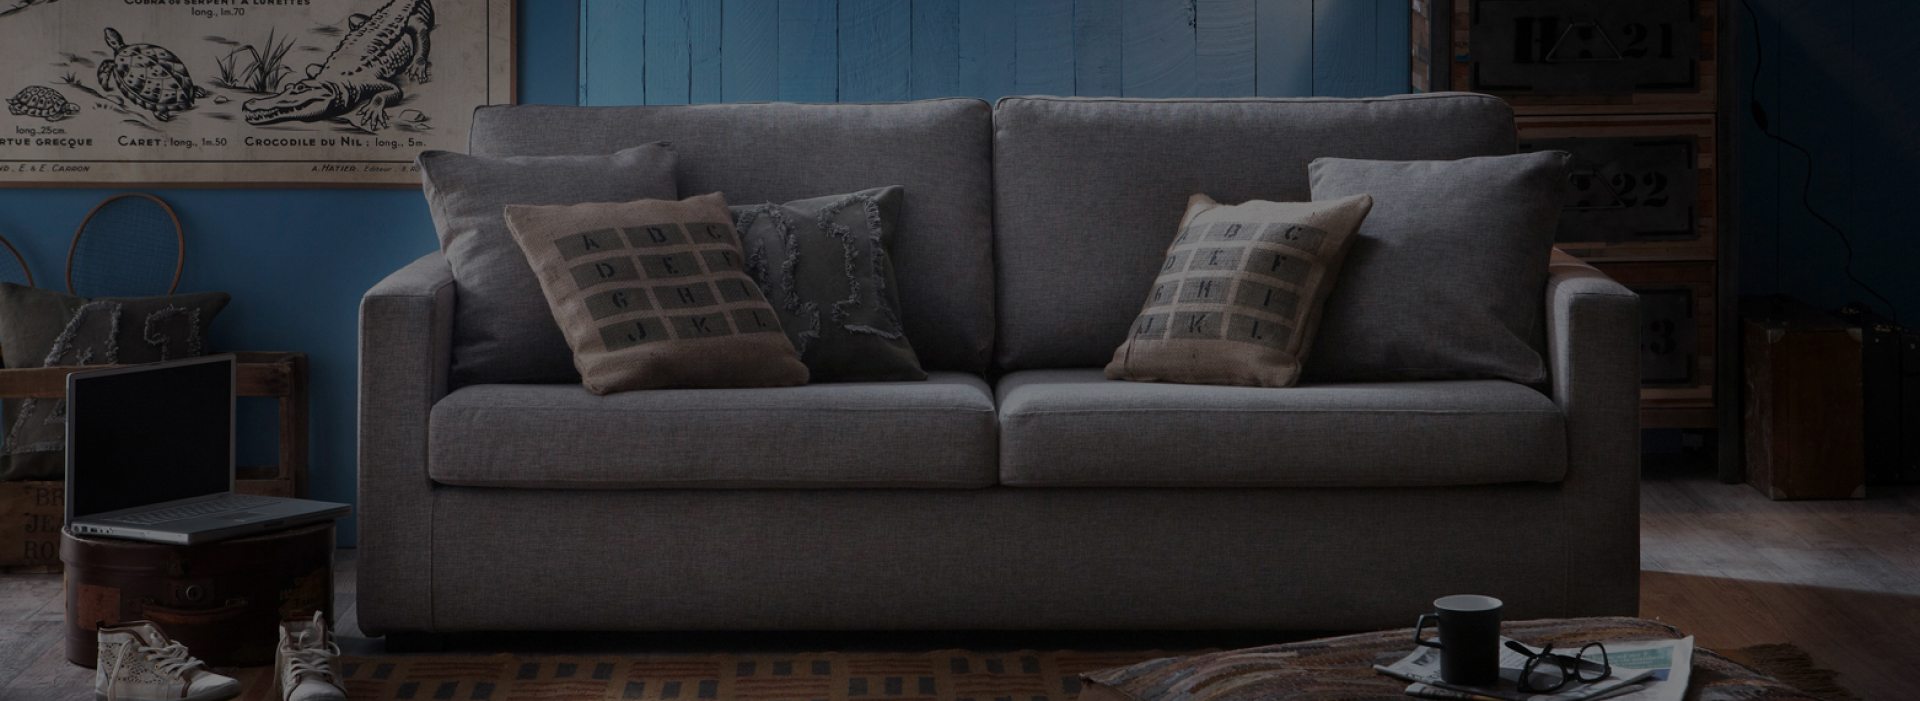 Sofa'sil : le canapé déhoussable et modulable 100% français